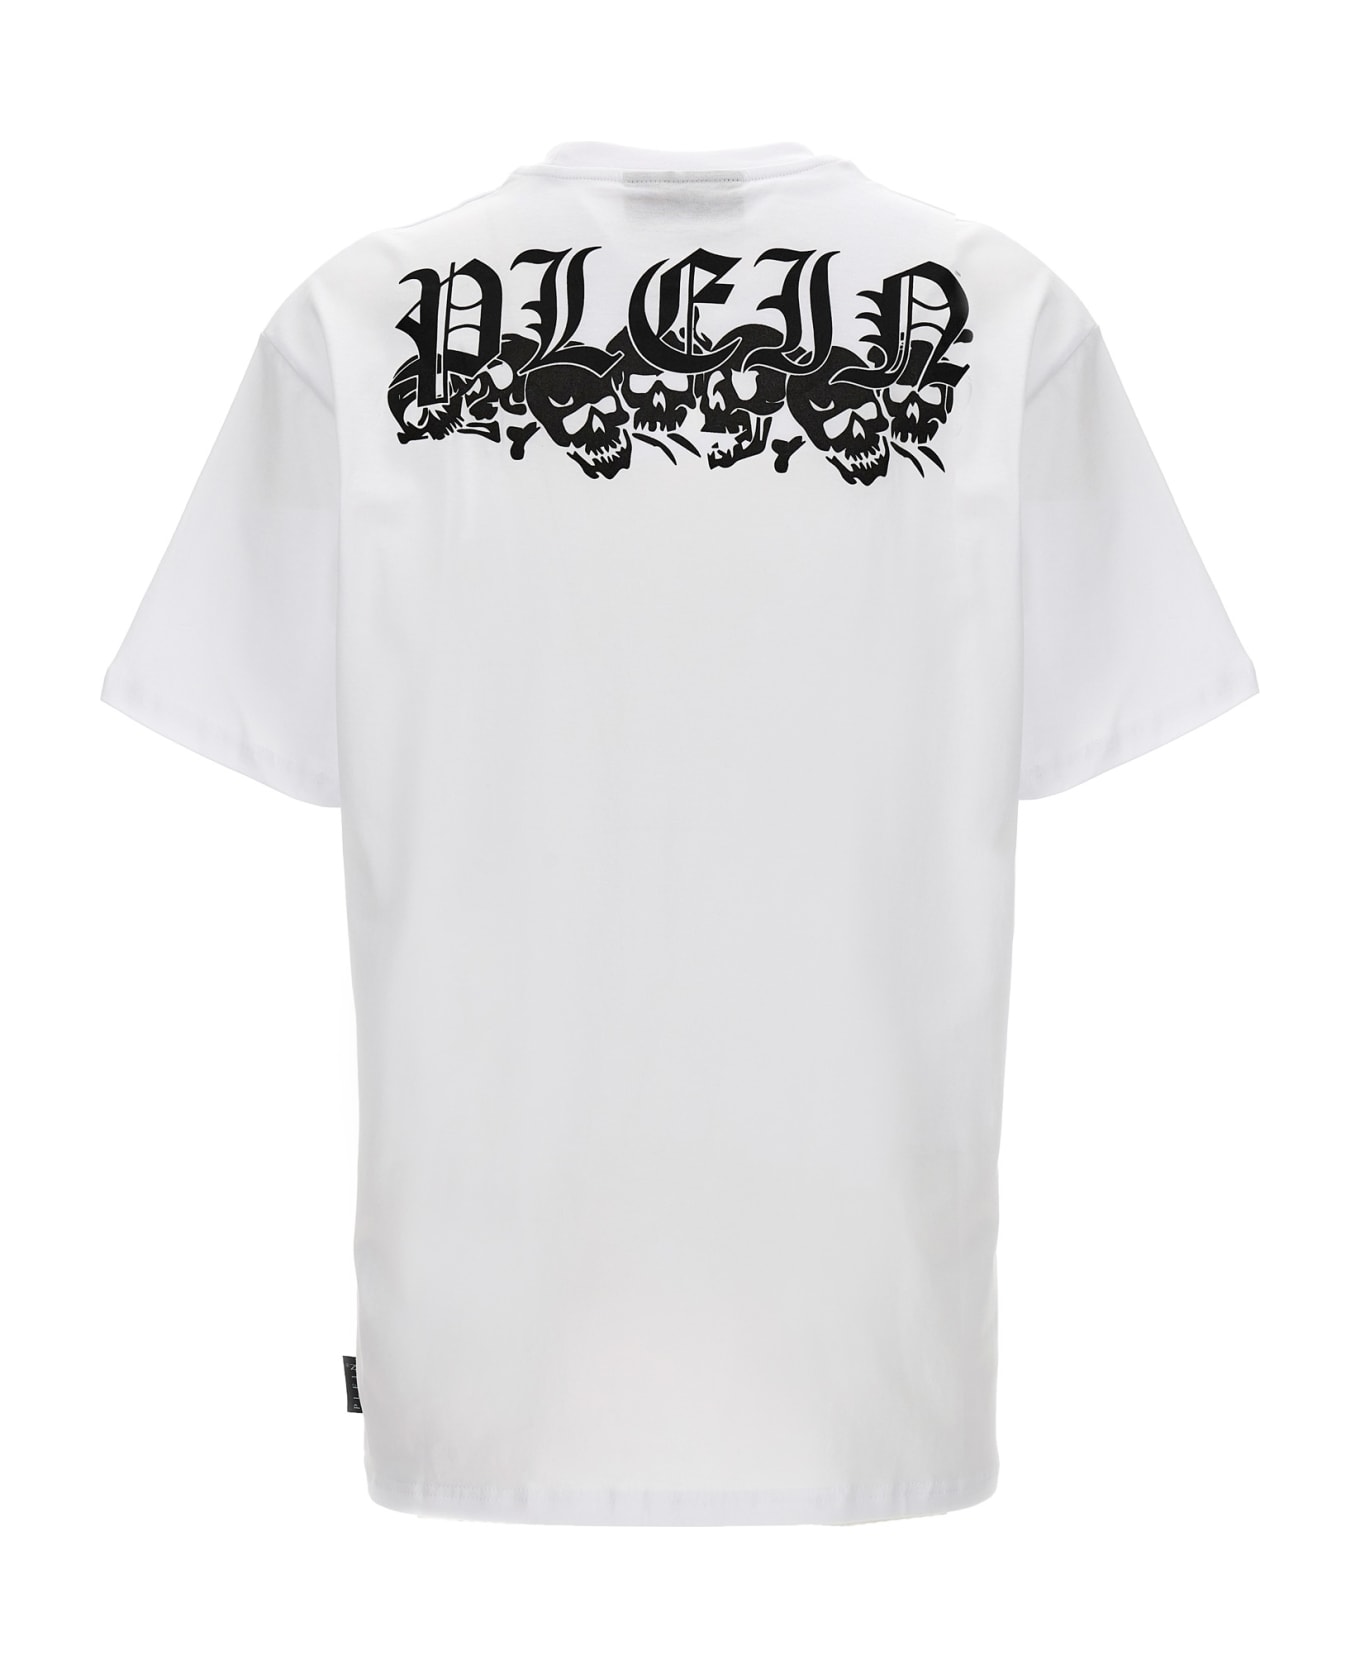 Philipp Plein Logo T-shirt - White/Black シャツ